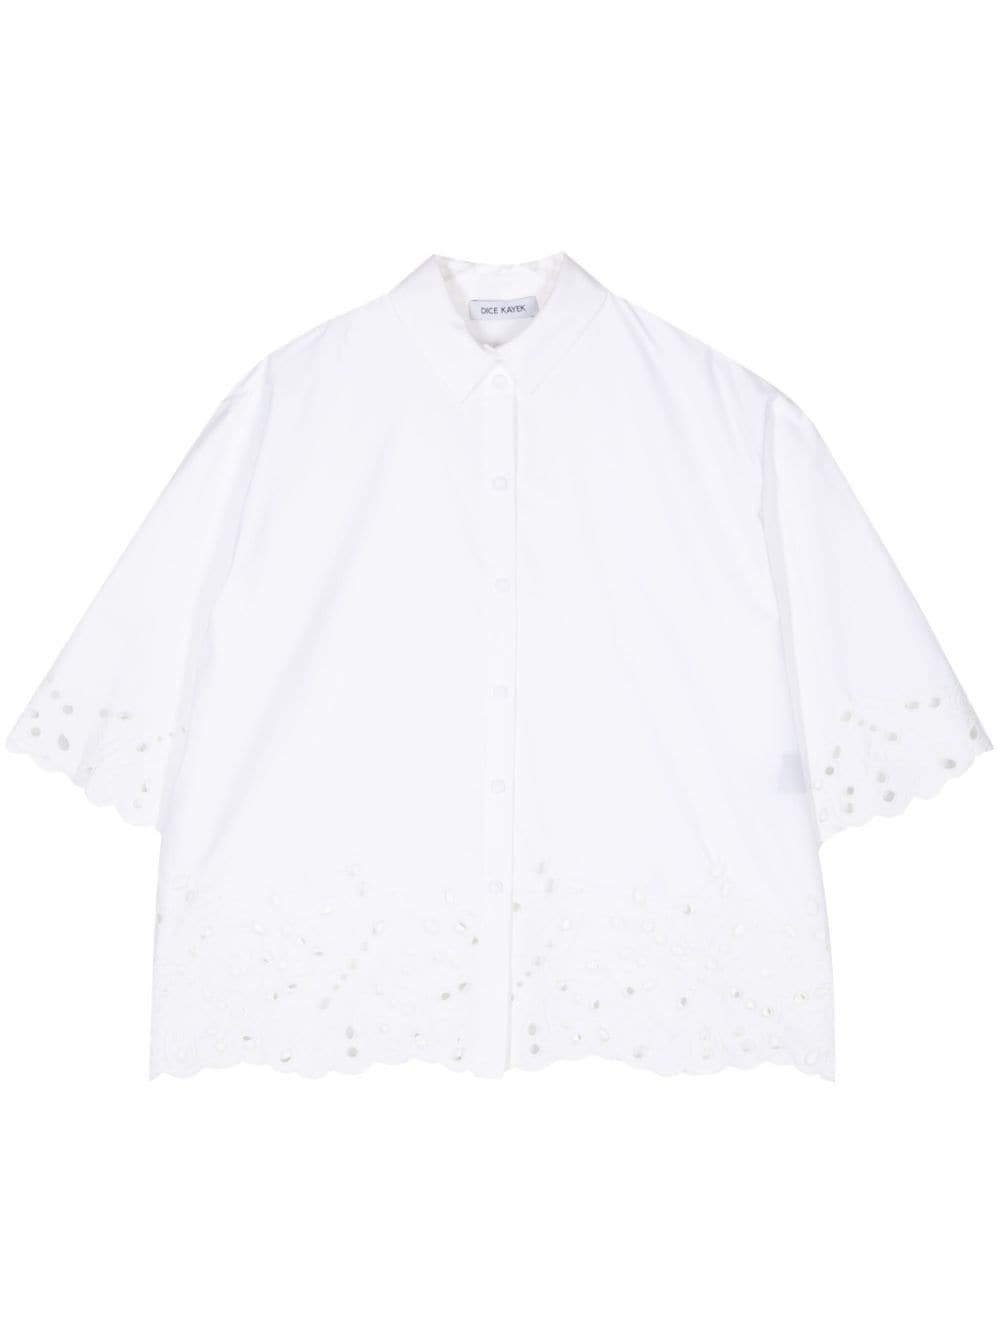 Dice Kayek embroidered cotton shirt - White von Dice Kayek